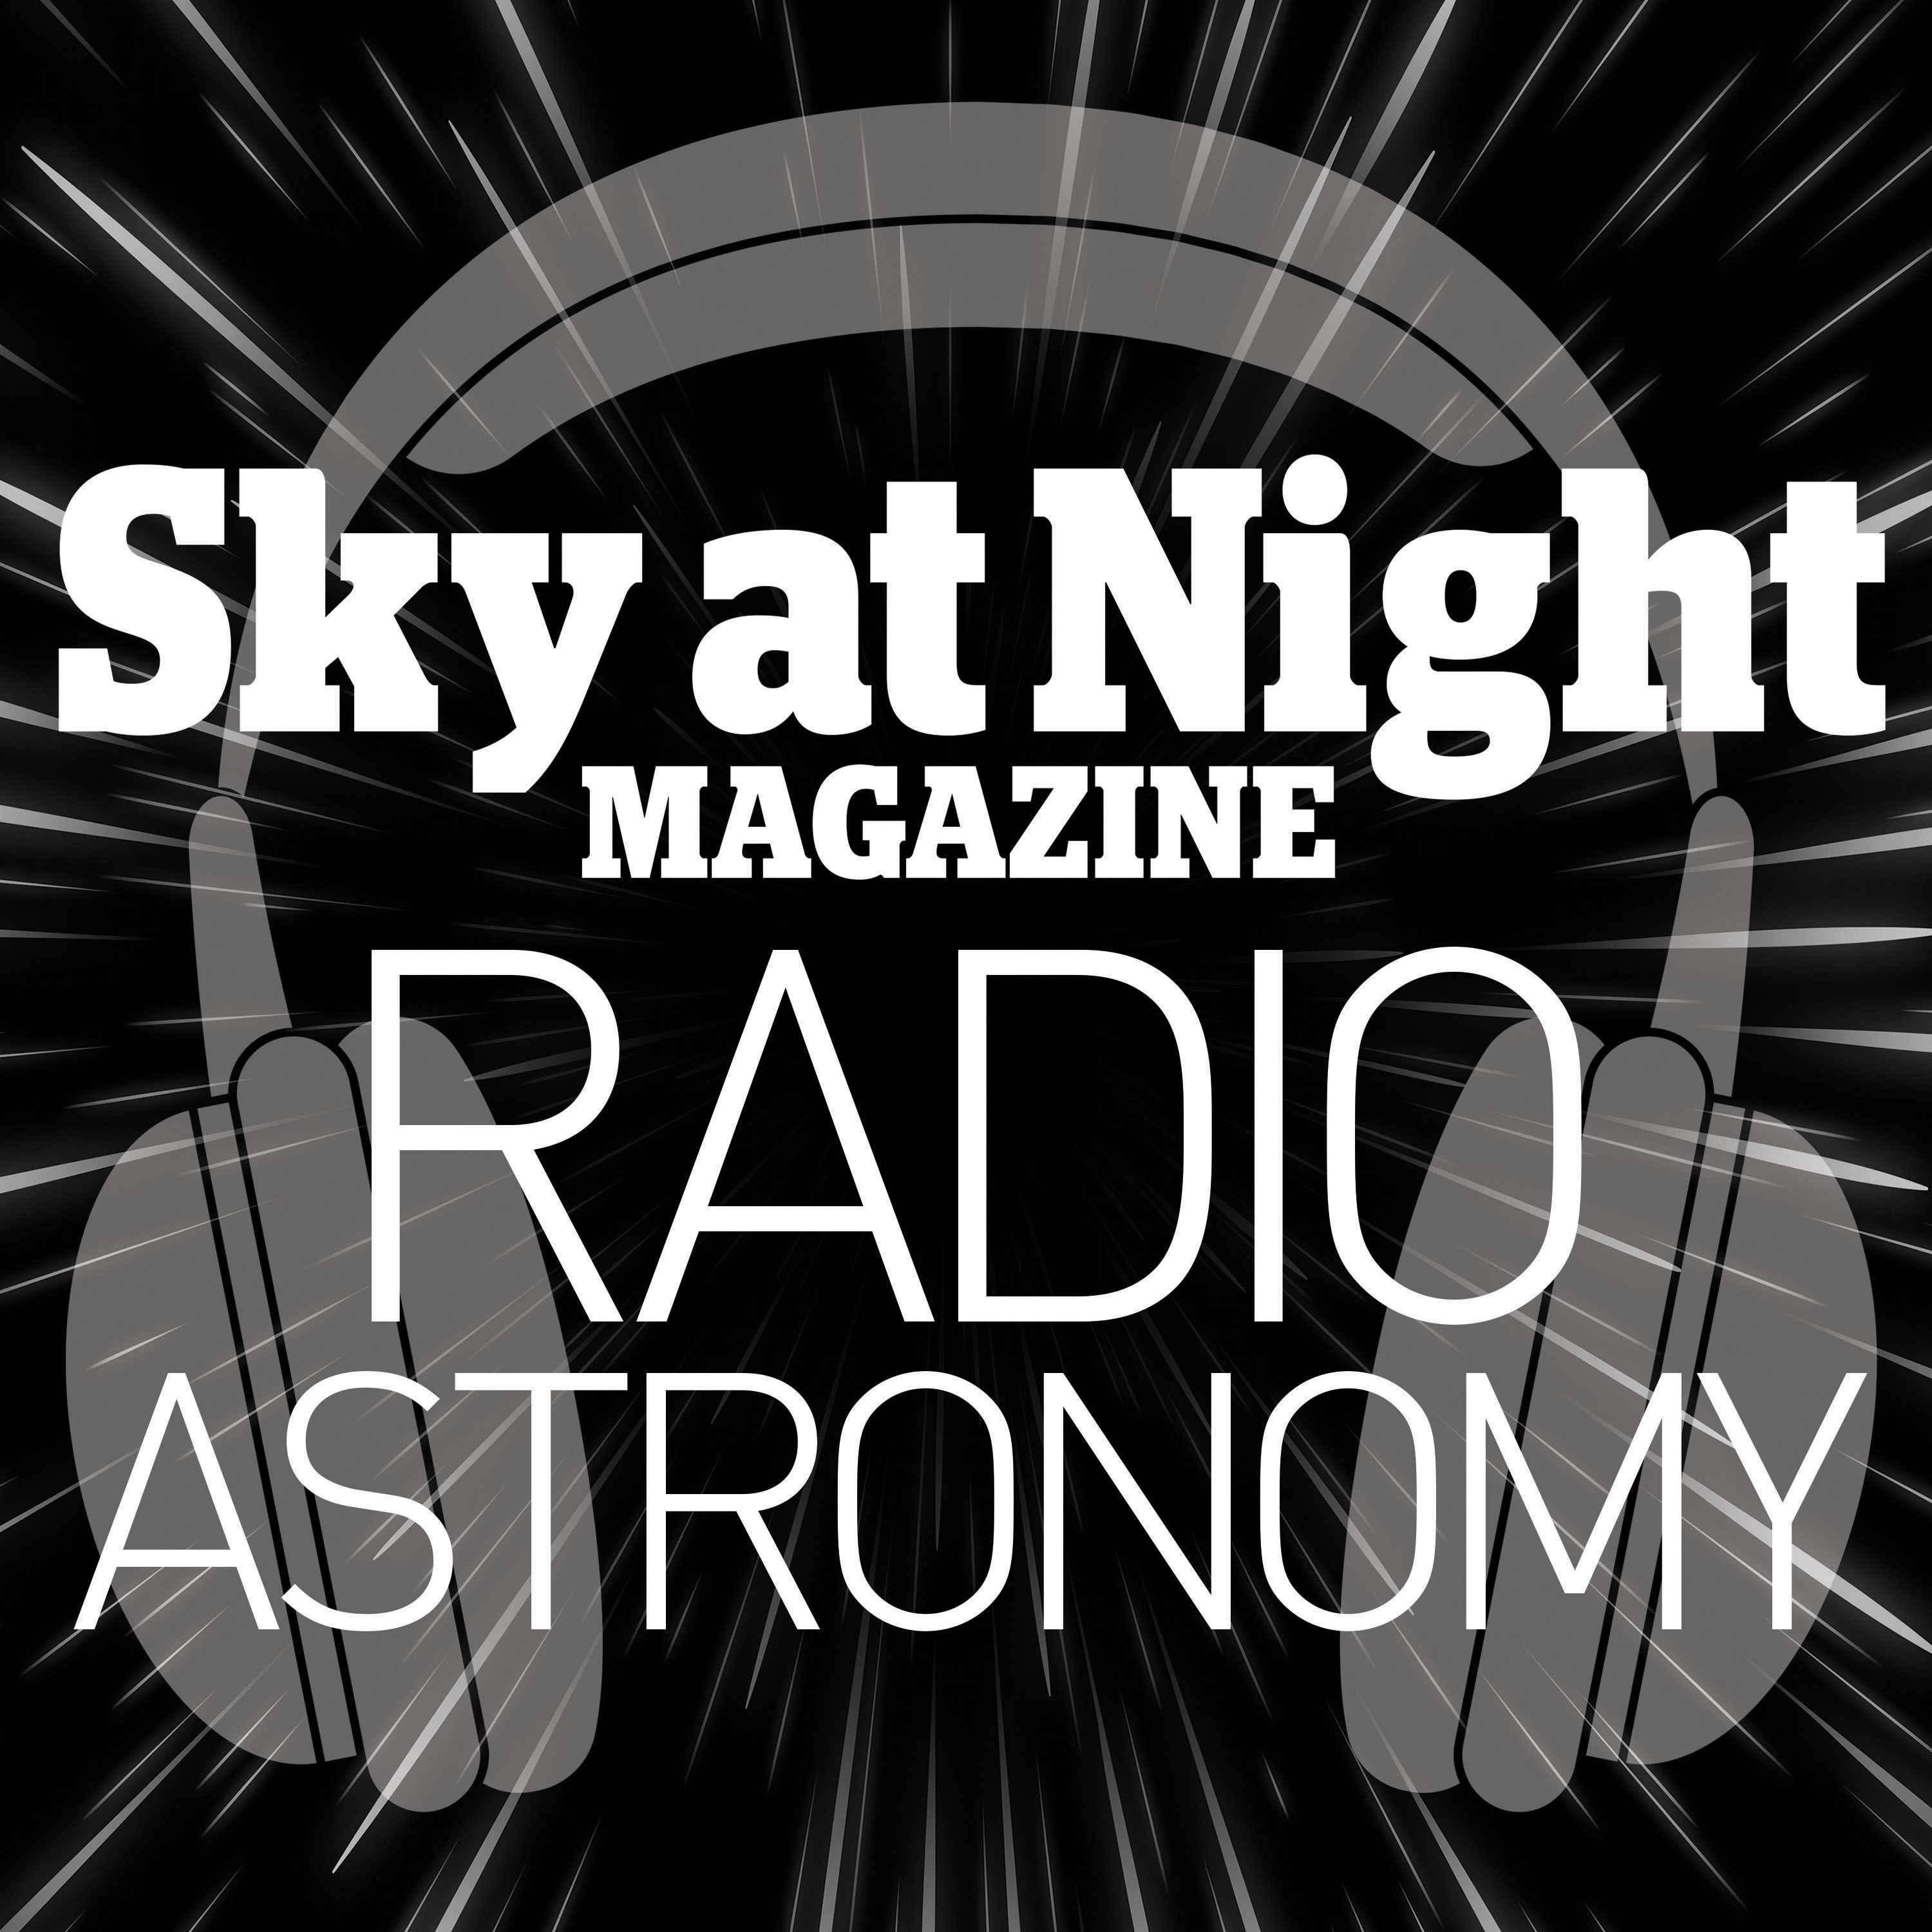 Radio Astronomy Image